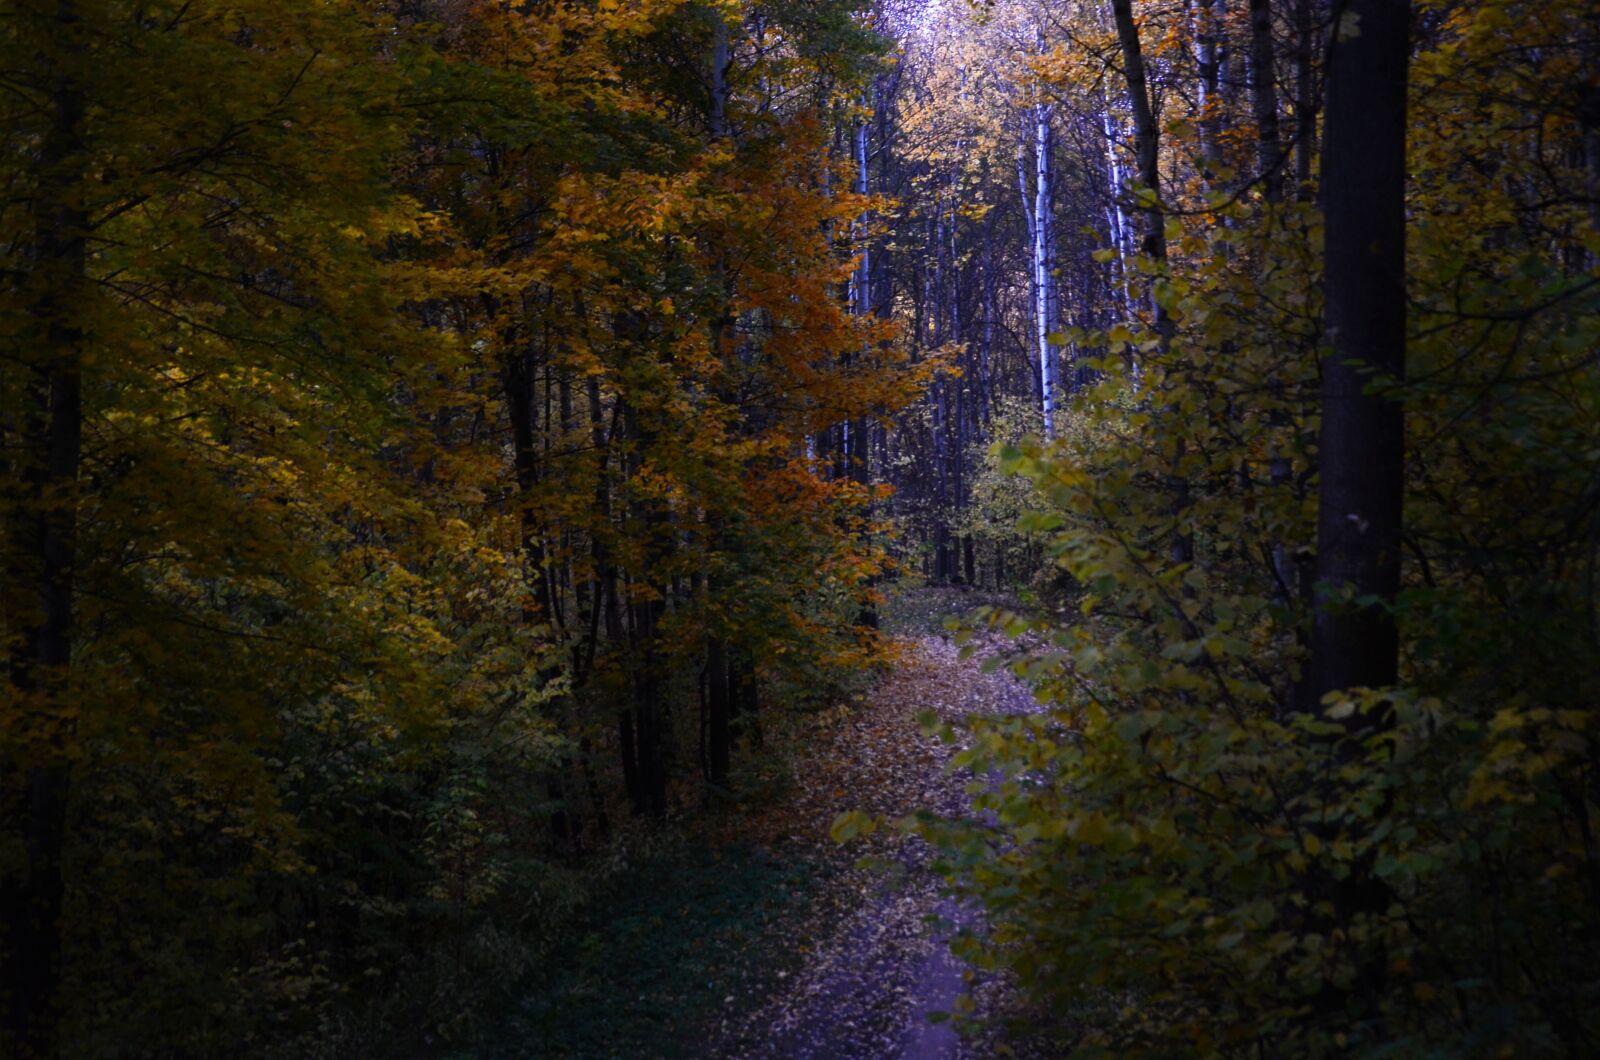 Nikon D5100 sample photo. Landscape, forest, autumn photography